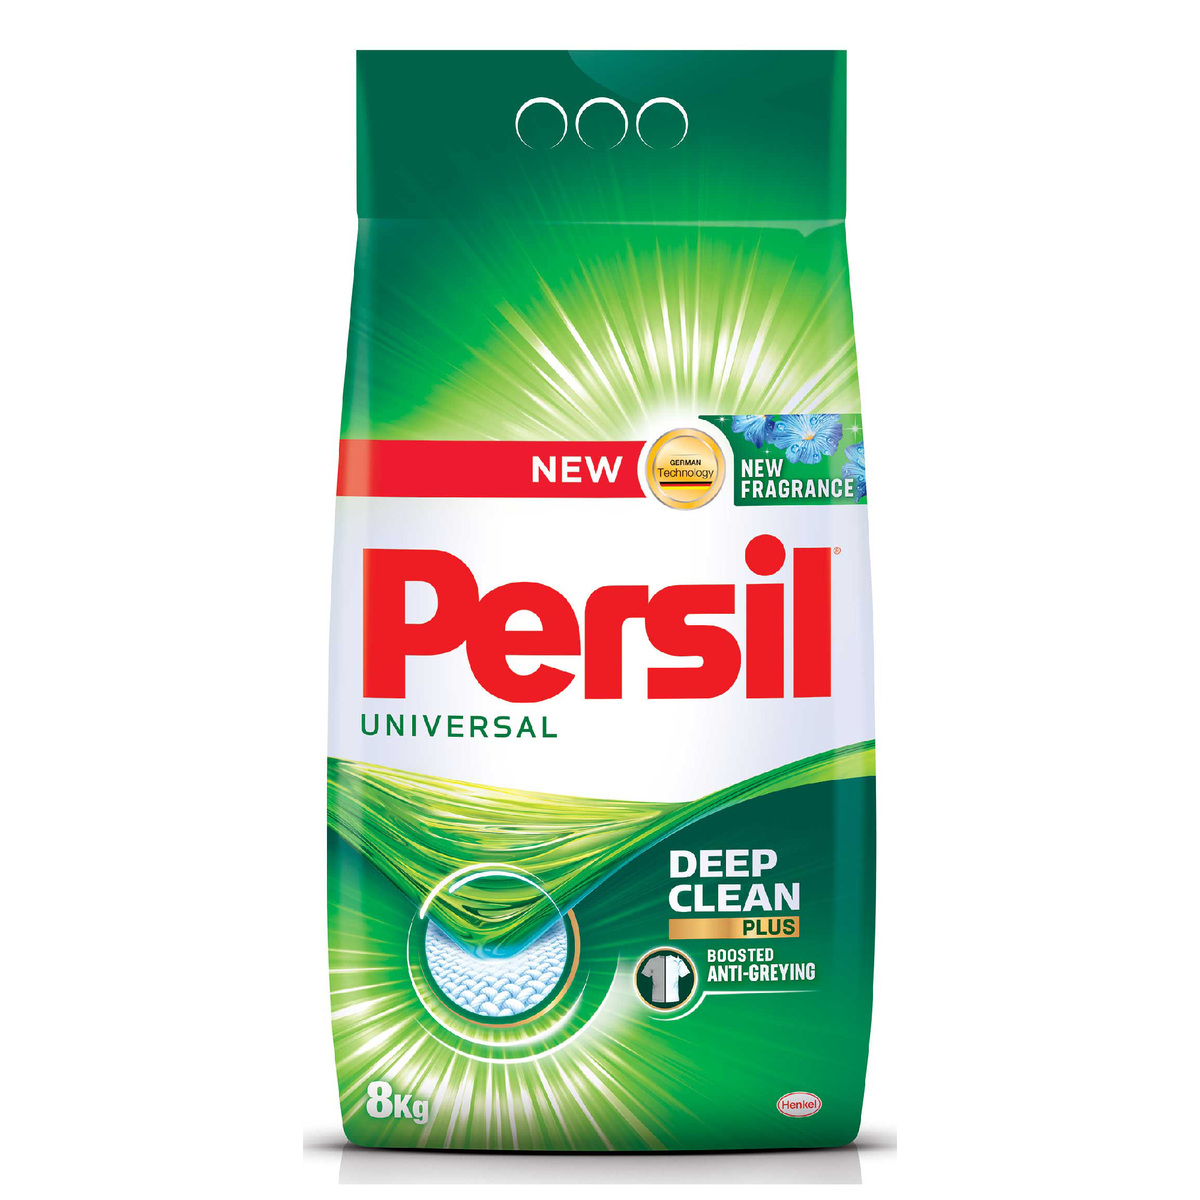 Persil Regina Deep Clean Front Loading Washing Powder 8 kg